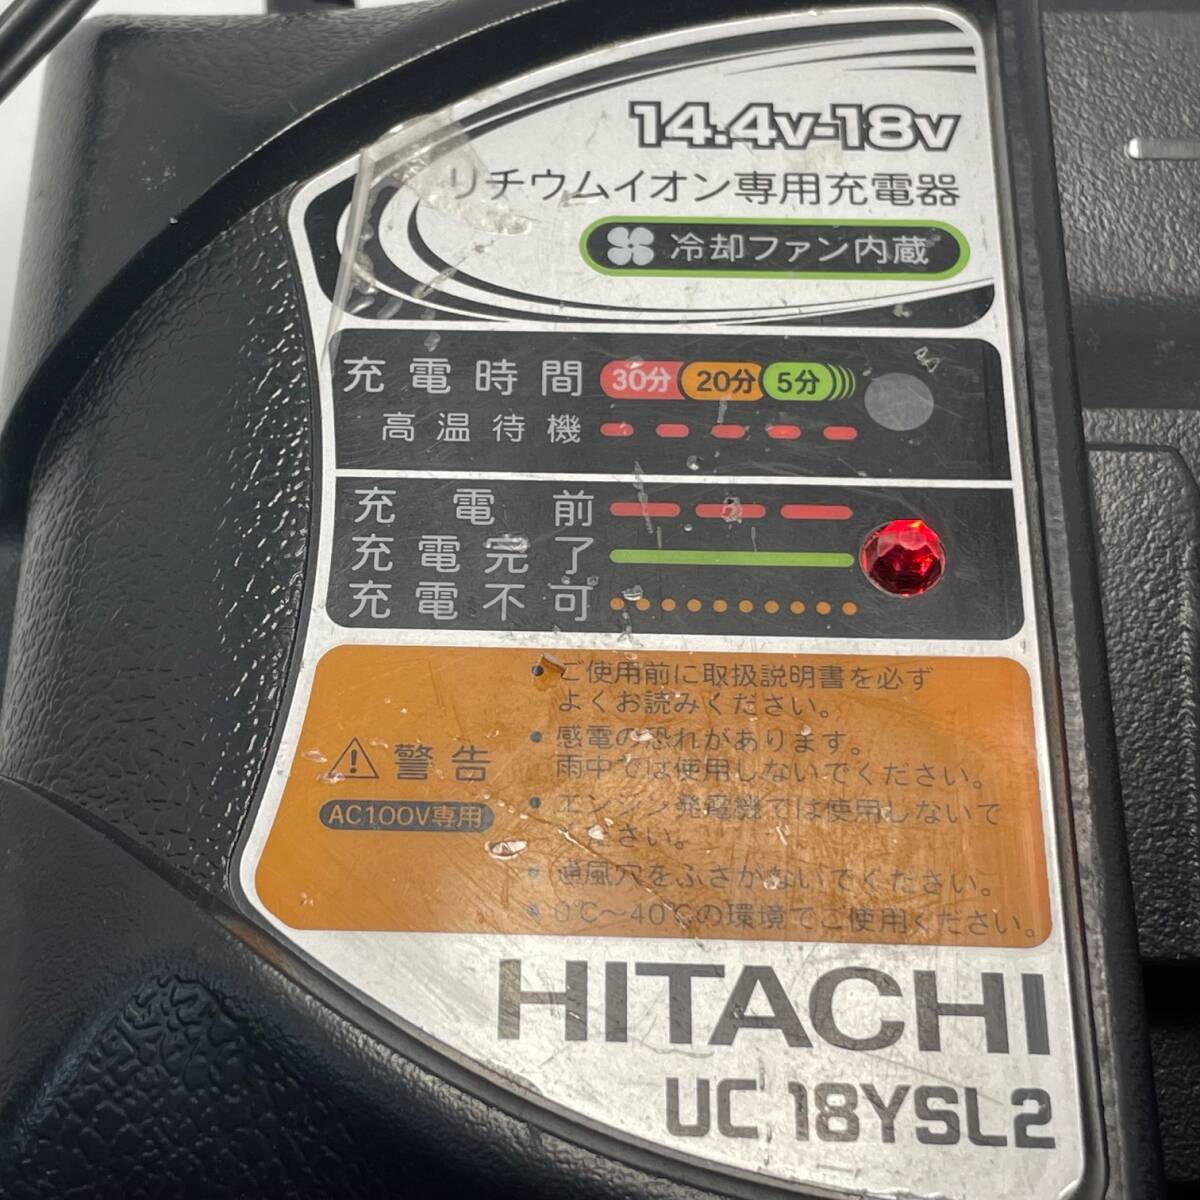 中古品 HITACHI UC 18YSL2 14.4V-18V リチウムイオン専用充電器 冷却ファン内蔵 急速充電器 リチウムイオンバッテリー 1円 から 売り切りの画像6